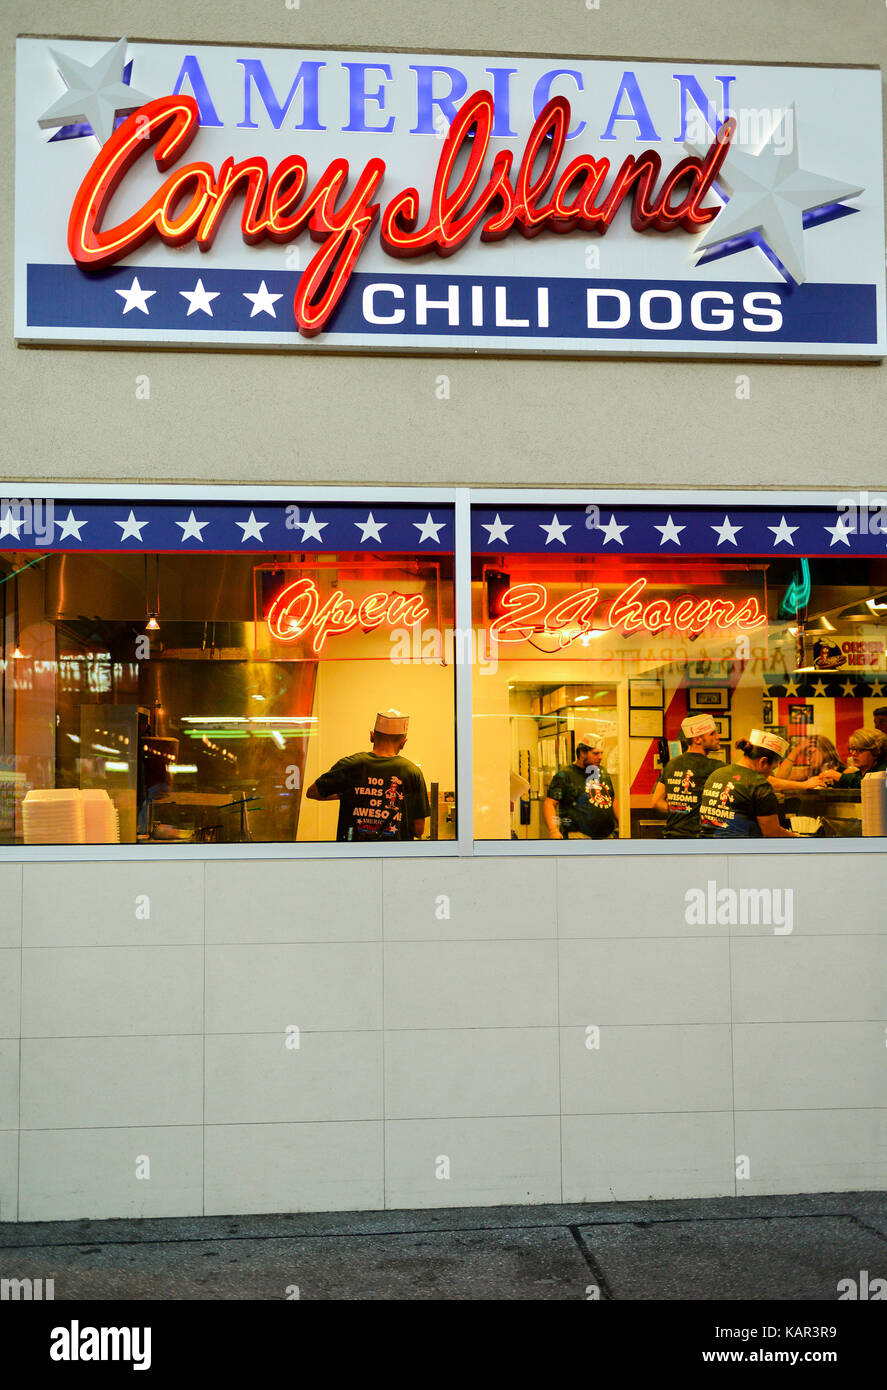 Amerikanische Coney Island Hotdog & Chili Dog Restaurant in der Innenstadt von Las Vegas, Nevada. Stockfoto